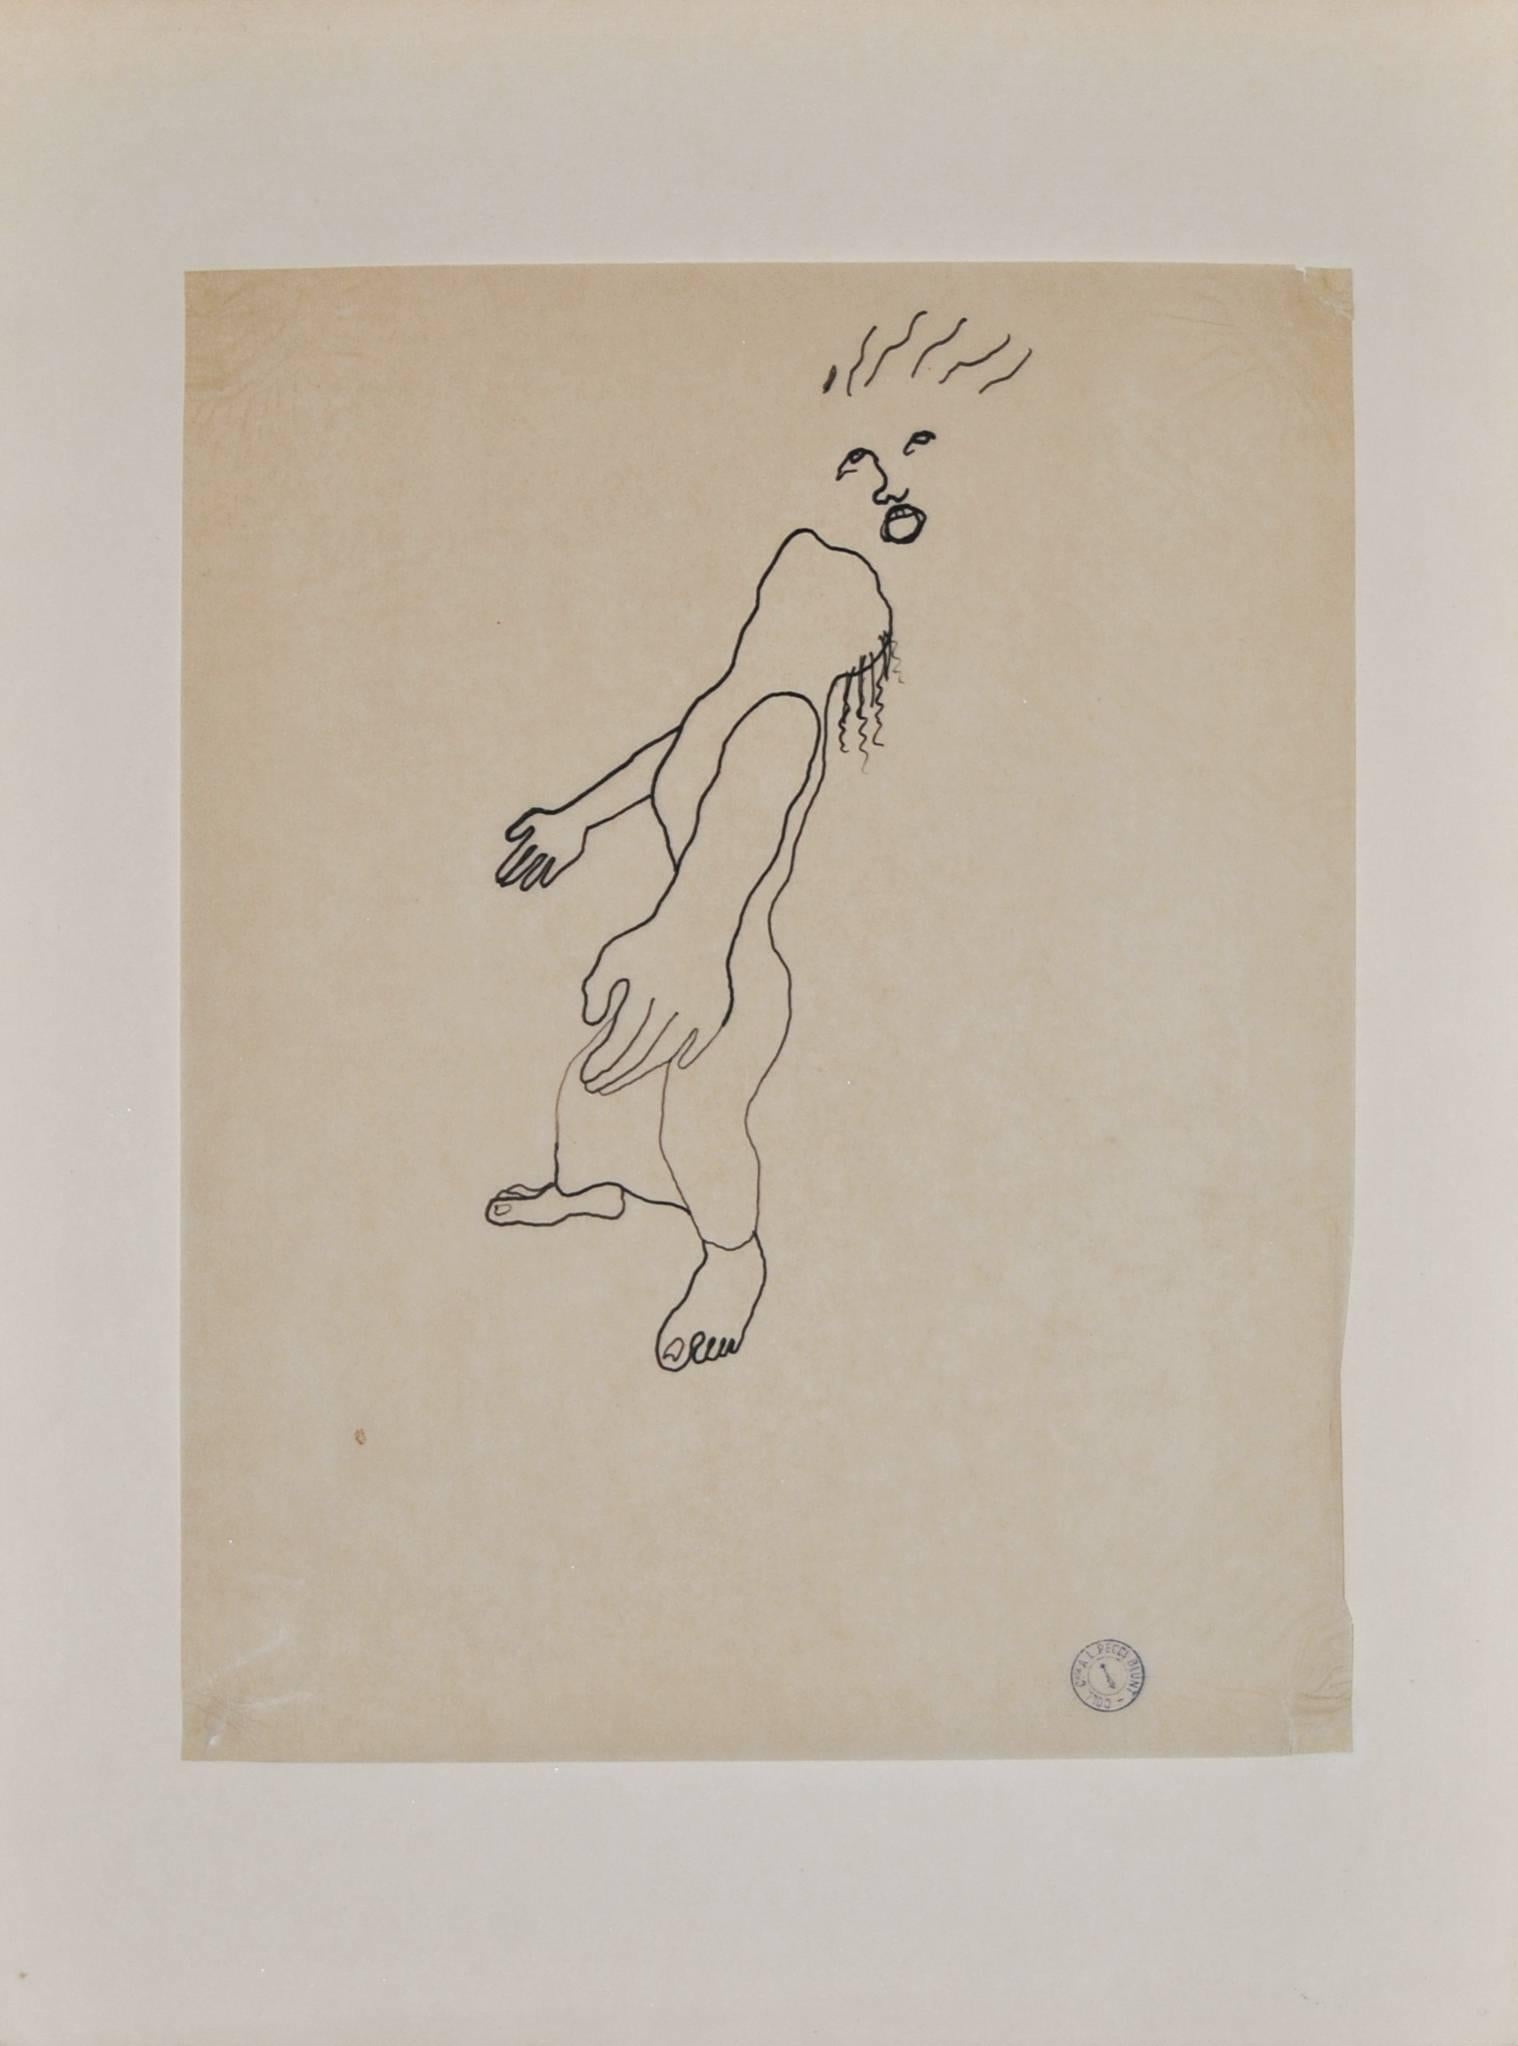 "Die Göttlichkeit" ist der Titel dieser essentiellen und rätselhaften Zeichnung des französischen Künstlers Jean Cocteau. In der Mitte der Szene steht eine Figur, die ihre Arme ausbreitet und in den Himmel blickt. Im obersten Teil der Komposition